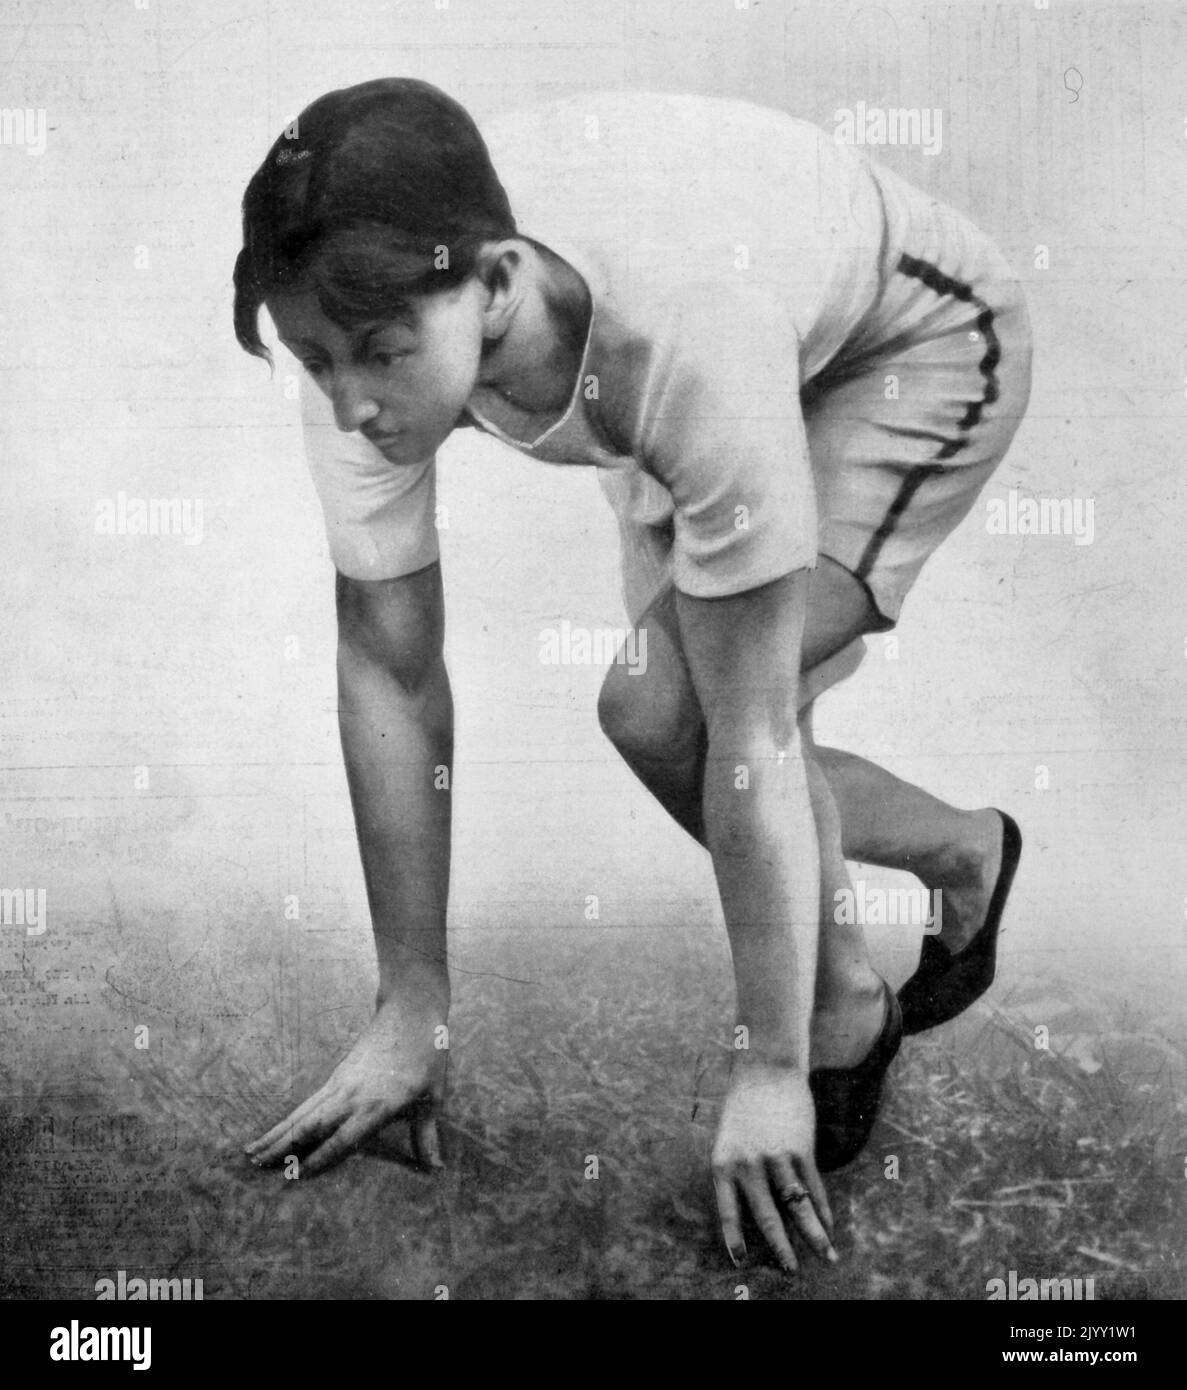 Arthur Francis Duffey (1879 - 1955), atleta americano di pista e campo che ha partecipato alle Olimpiadi estive del 1900 a Parigi, Francia. È stato un alumnus della classe 1899 della Worcester Academy e della Georgetown University. Era originario di Boston, Massachusetts, e dopo la sua carriera atletica è stato uno scrittore e editore sportivo e si stabilì nella zona di Boston. Duffey ha gareggiato nell'evento di 100 metri nelle Olimpiadi estive del 1900, piazzandosi quarto assoluto. Ha vinto il suo primo turno di calore con un tempo di 11,4 secondi, sceso a 11,0 secondi per vincere la sua semifinale, e ha preso un primo vantaggio in finale prima del pullin Foto Stock